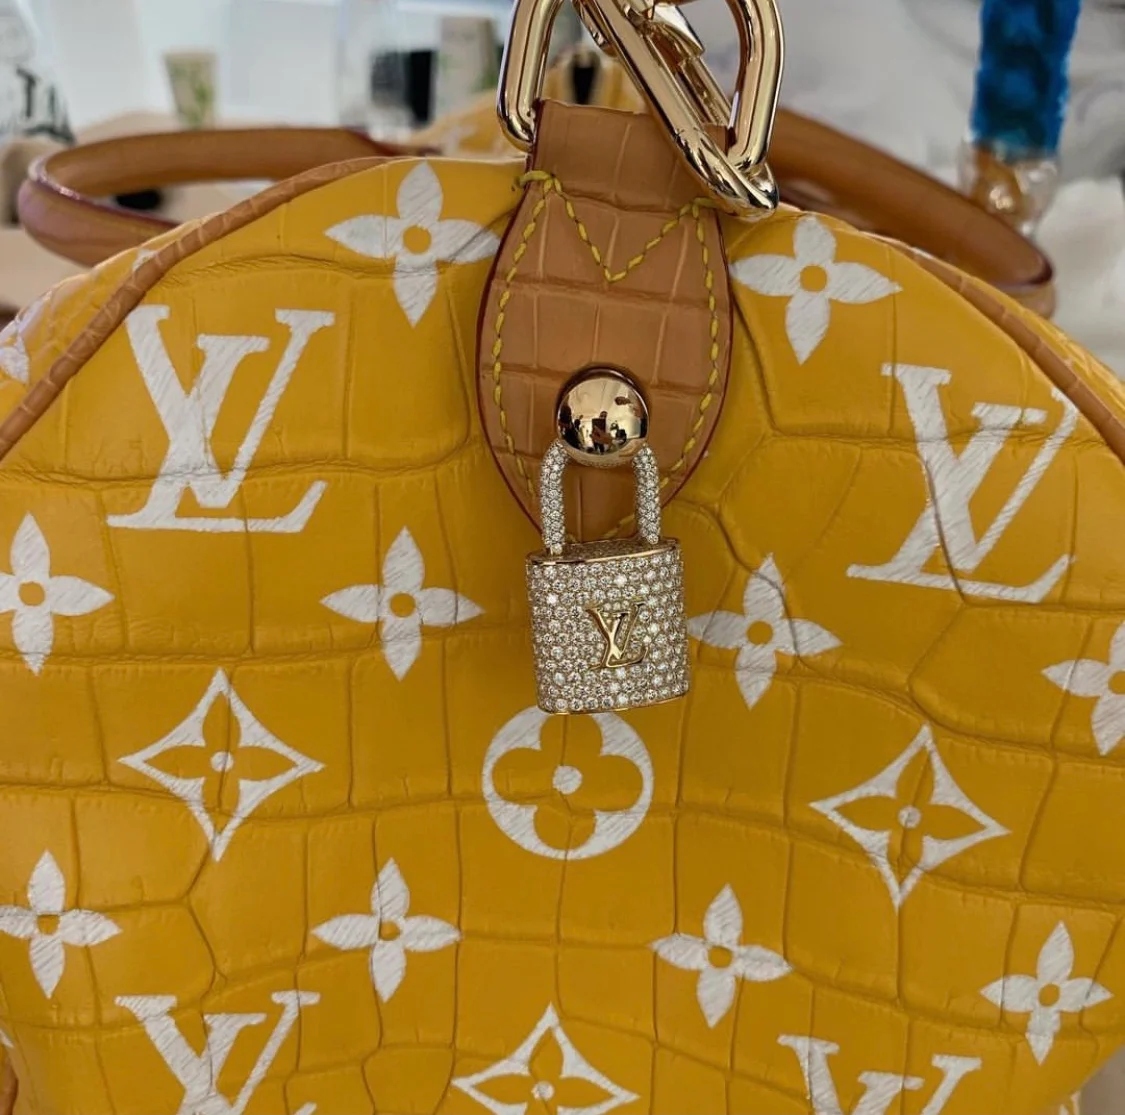 Louis Vuitton lanza su primera colección de objetos decorativos de